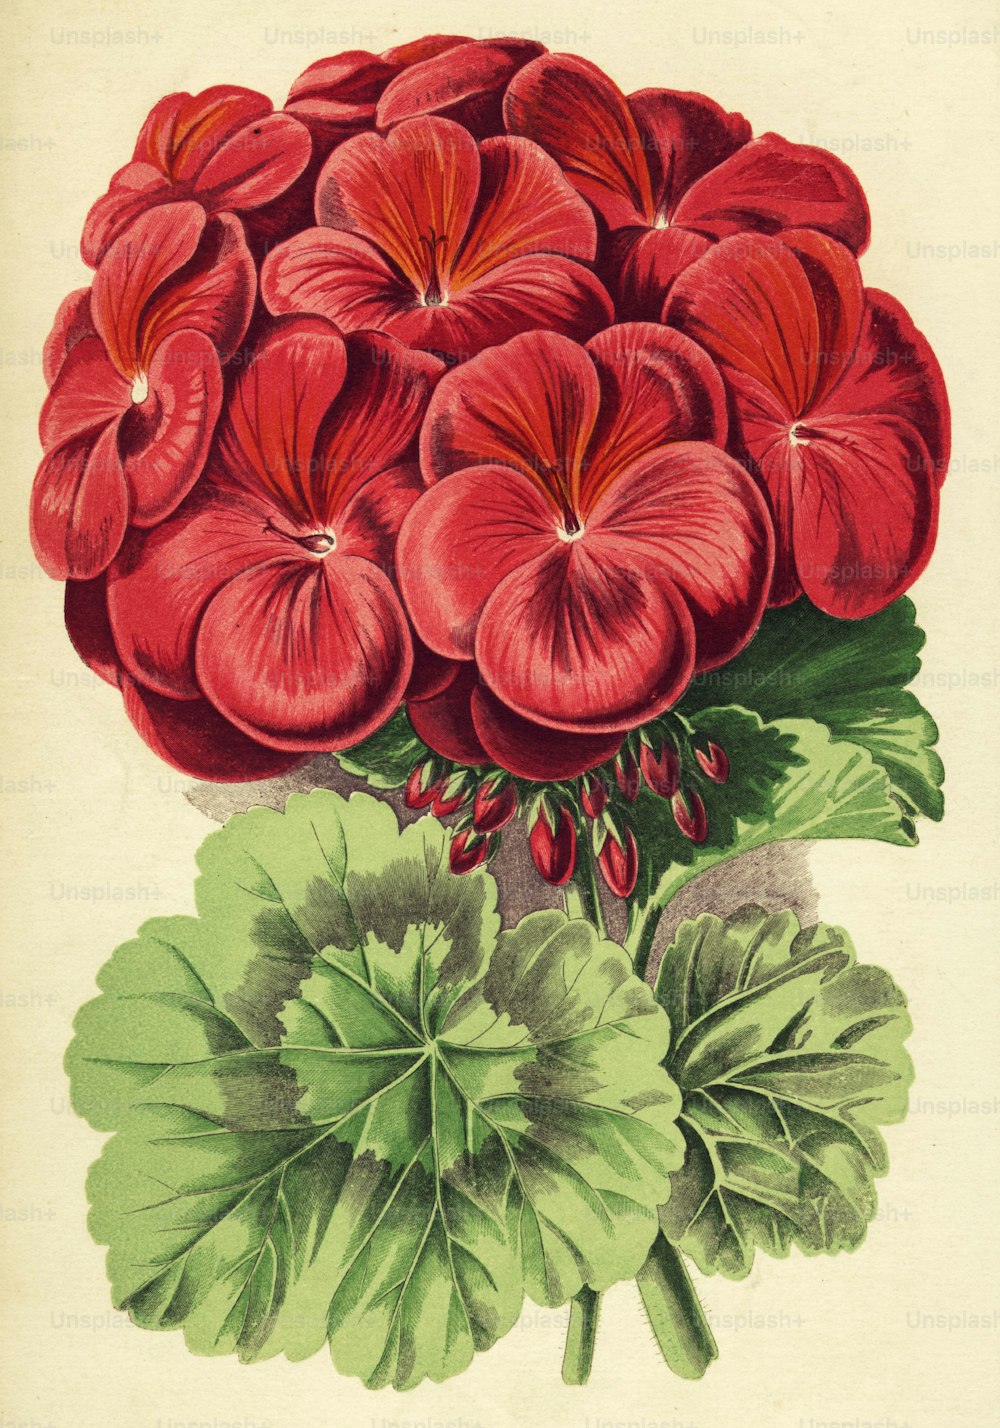 vers 1850 : Un pélargonium imogène d’un rouge riche (Photo de Hulton Archive/Getty Images)